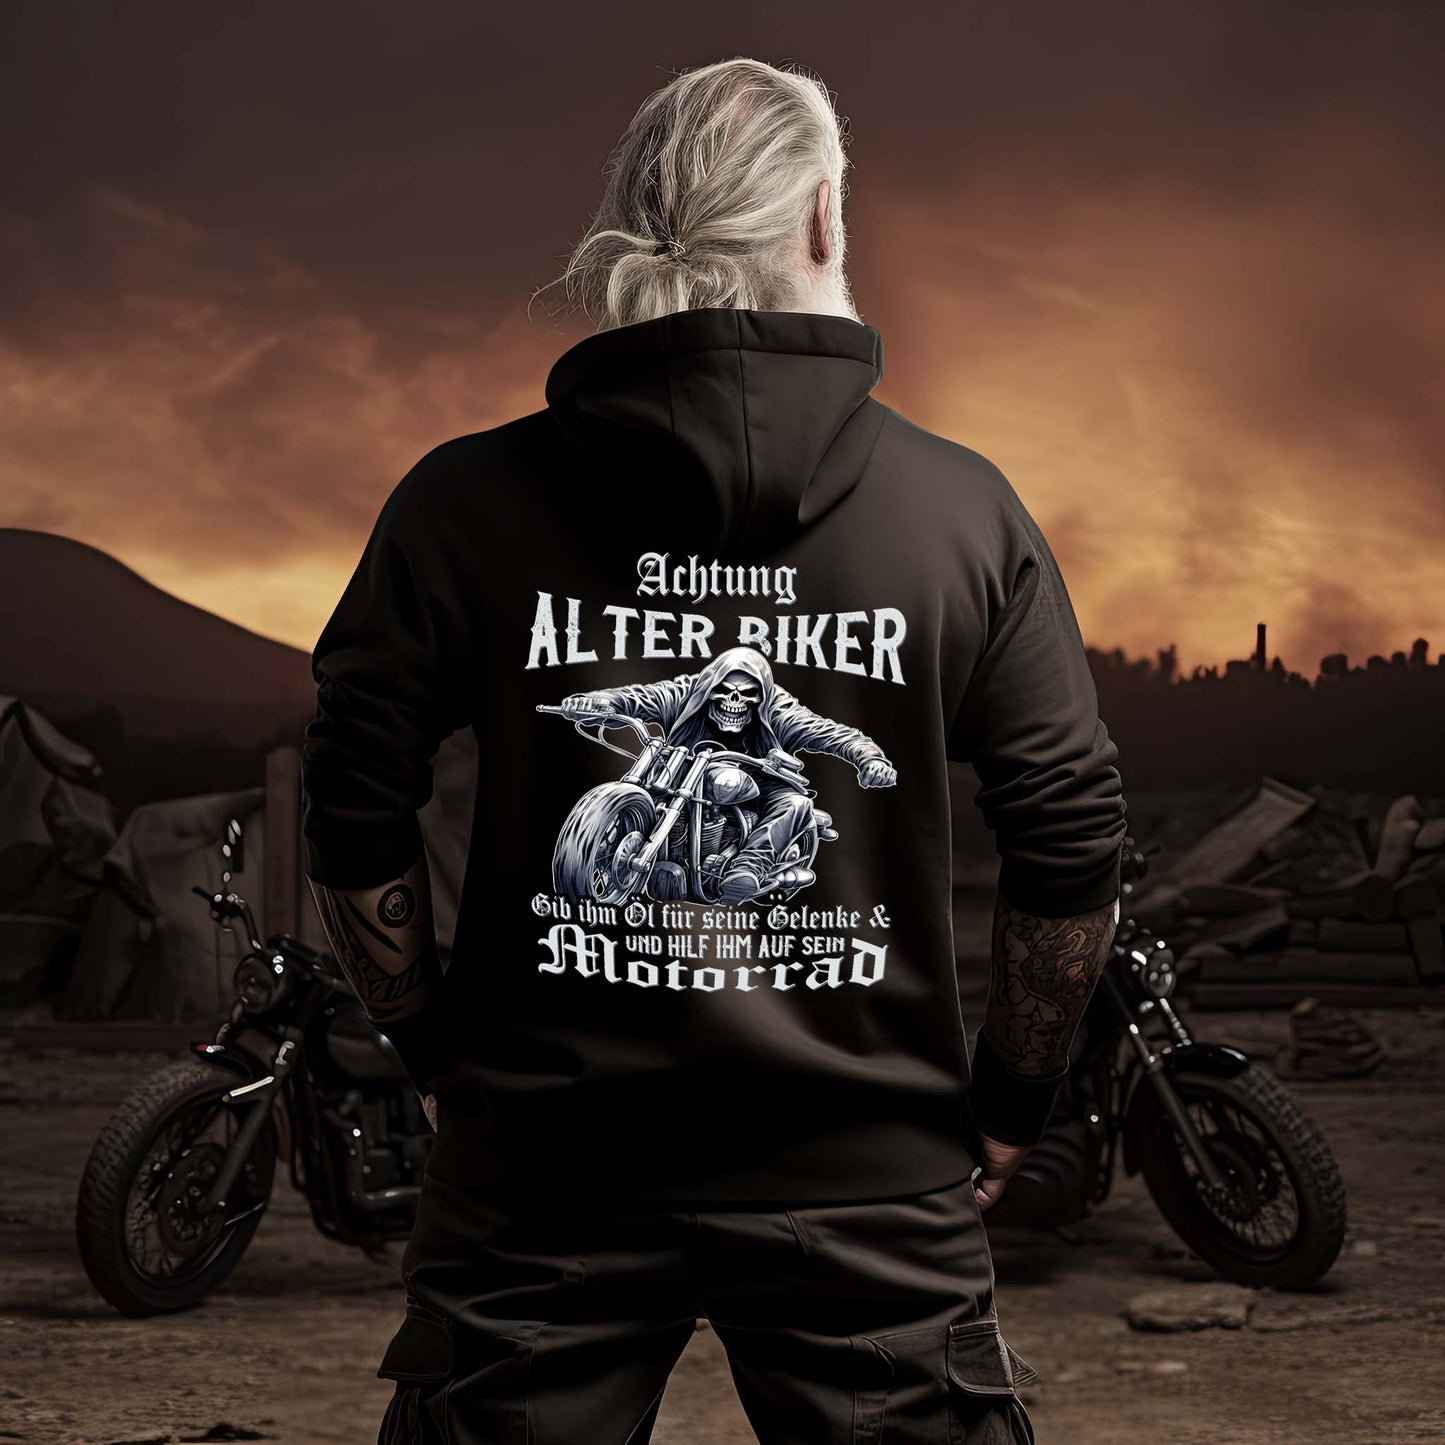 Achtung alter Biker - Gib ihm Öl und hilf ihm auf sein Motorrad  - Reißverschluss-Jacke Zip-Hoodie